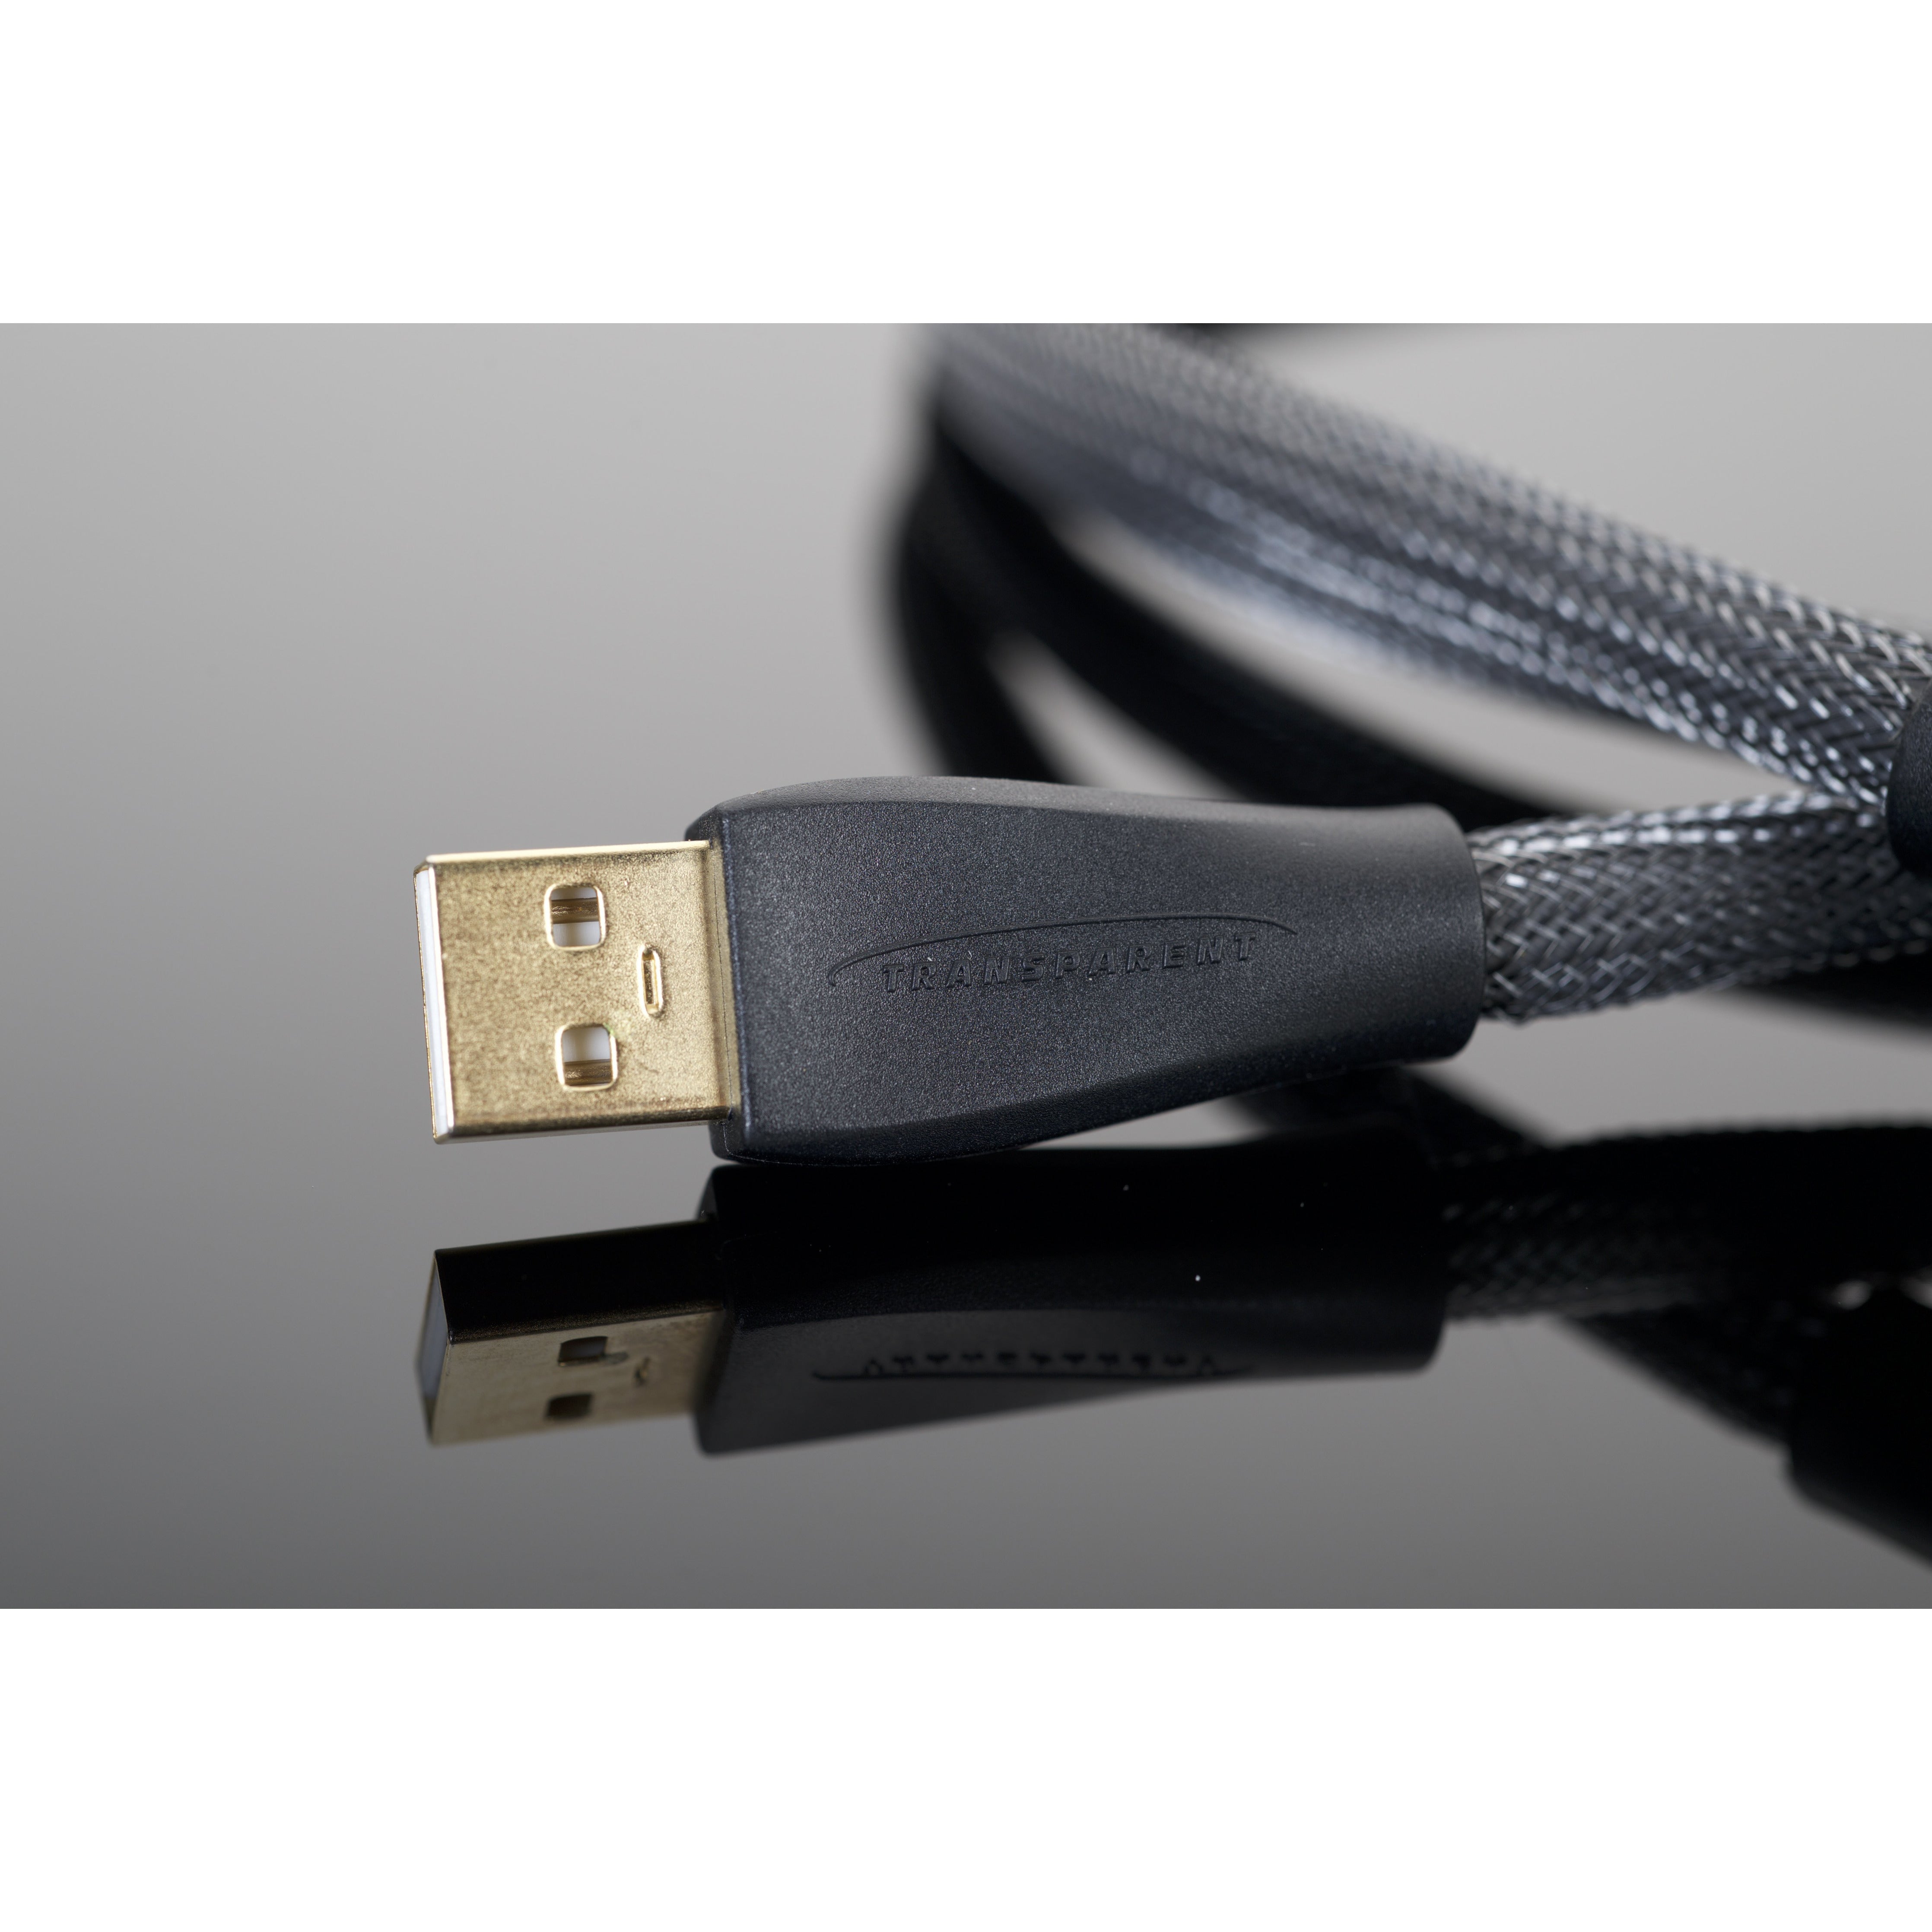 Transparent USB Digital Cable